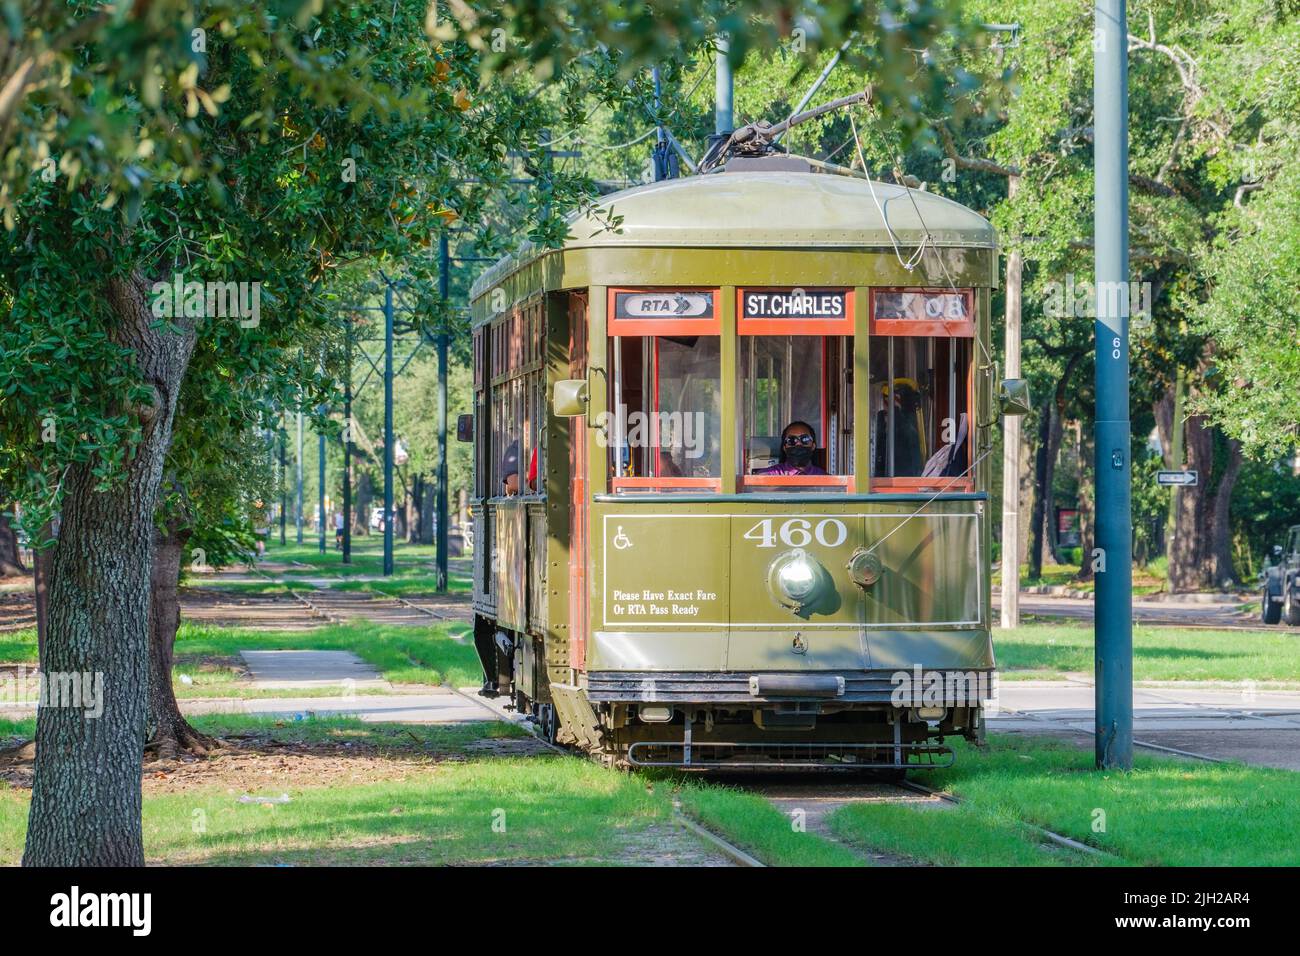 LA NOUVELLE-ORLÉANS, LA, États-Unis - 11 JUILLET 2022 : tramway de la ligne St. Charles qui approche de la zone riverbend de South Carrollton Avenue dans les quartiers nord de la Nouvelle-Orléans Banque D'Images